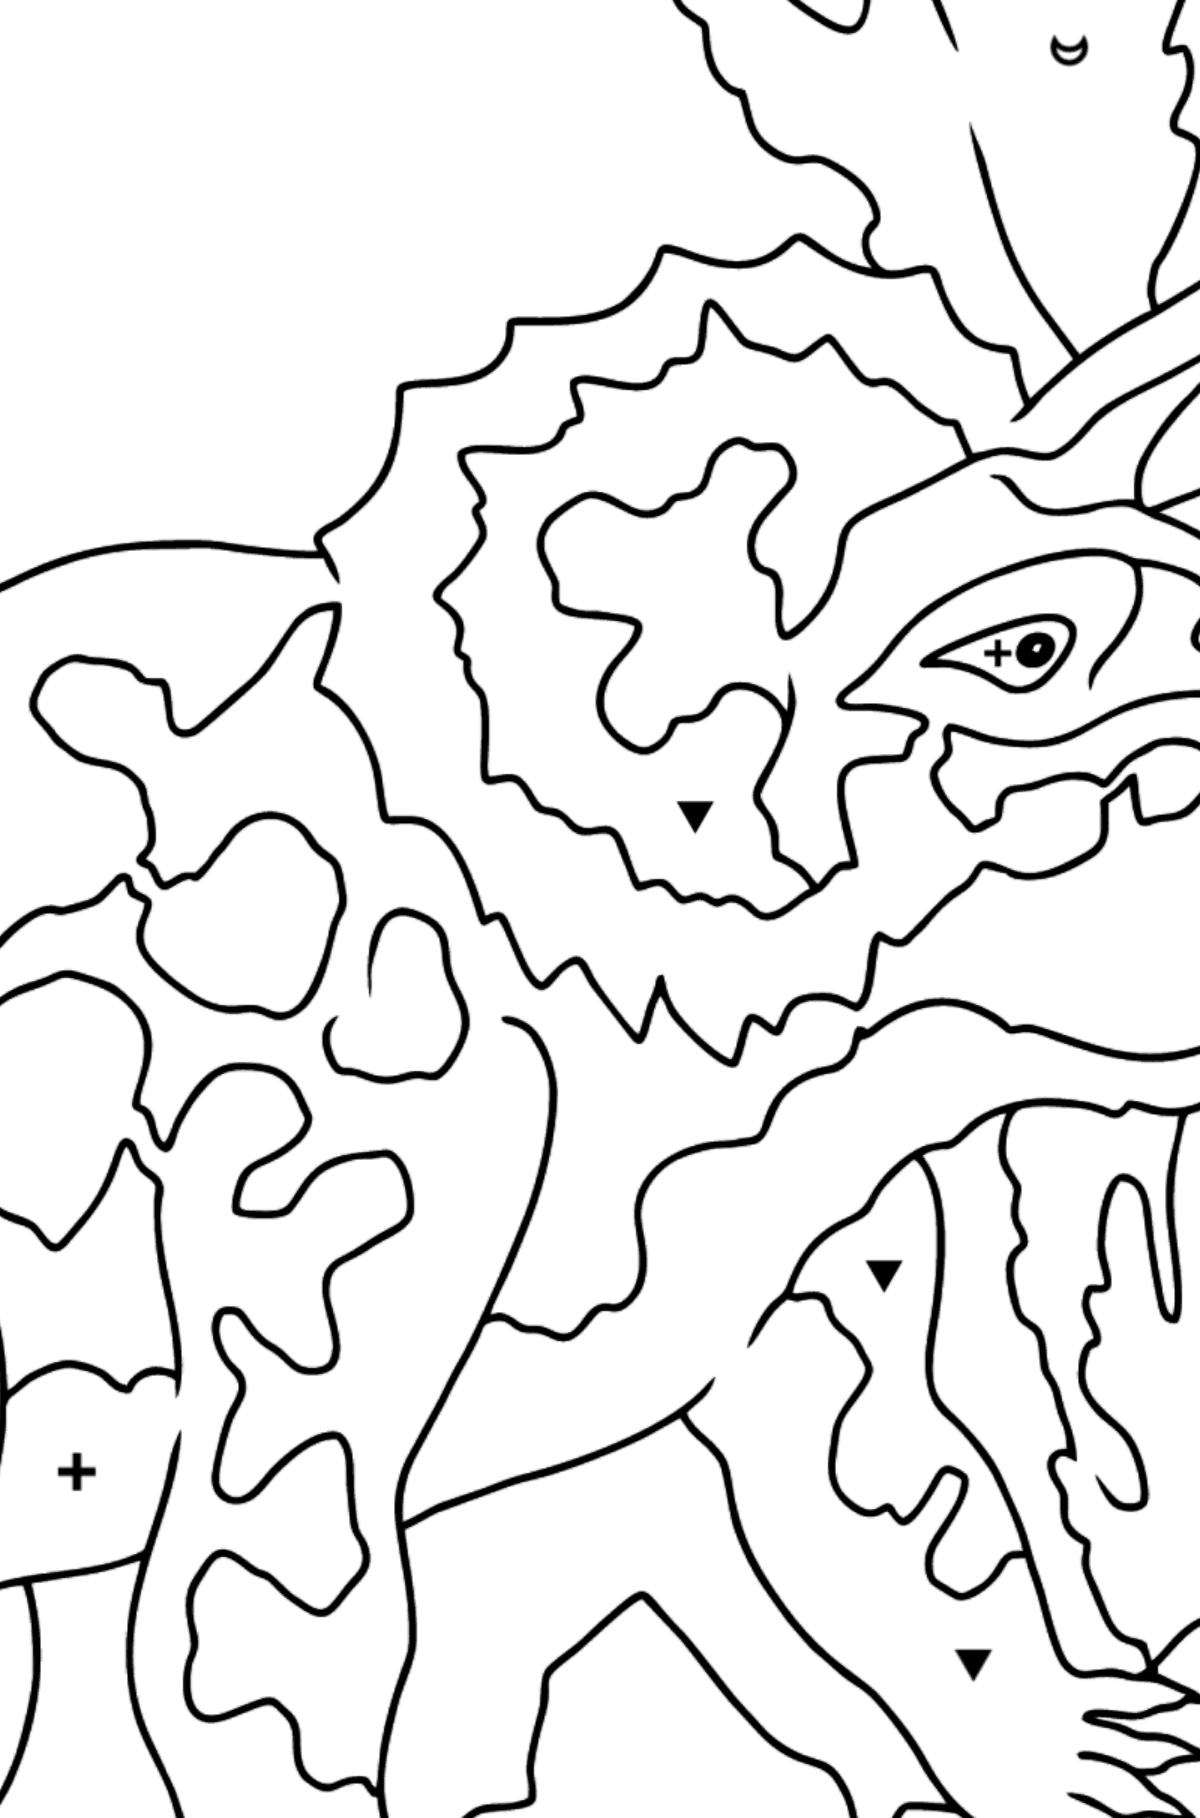 Tegning til fargelegging triceratops (enkelt) - Fargelegge etter symboler for barn